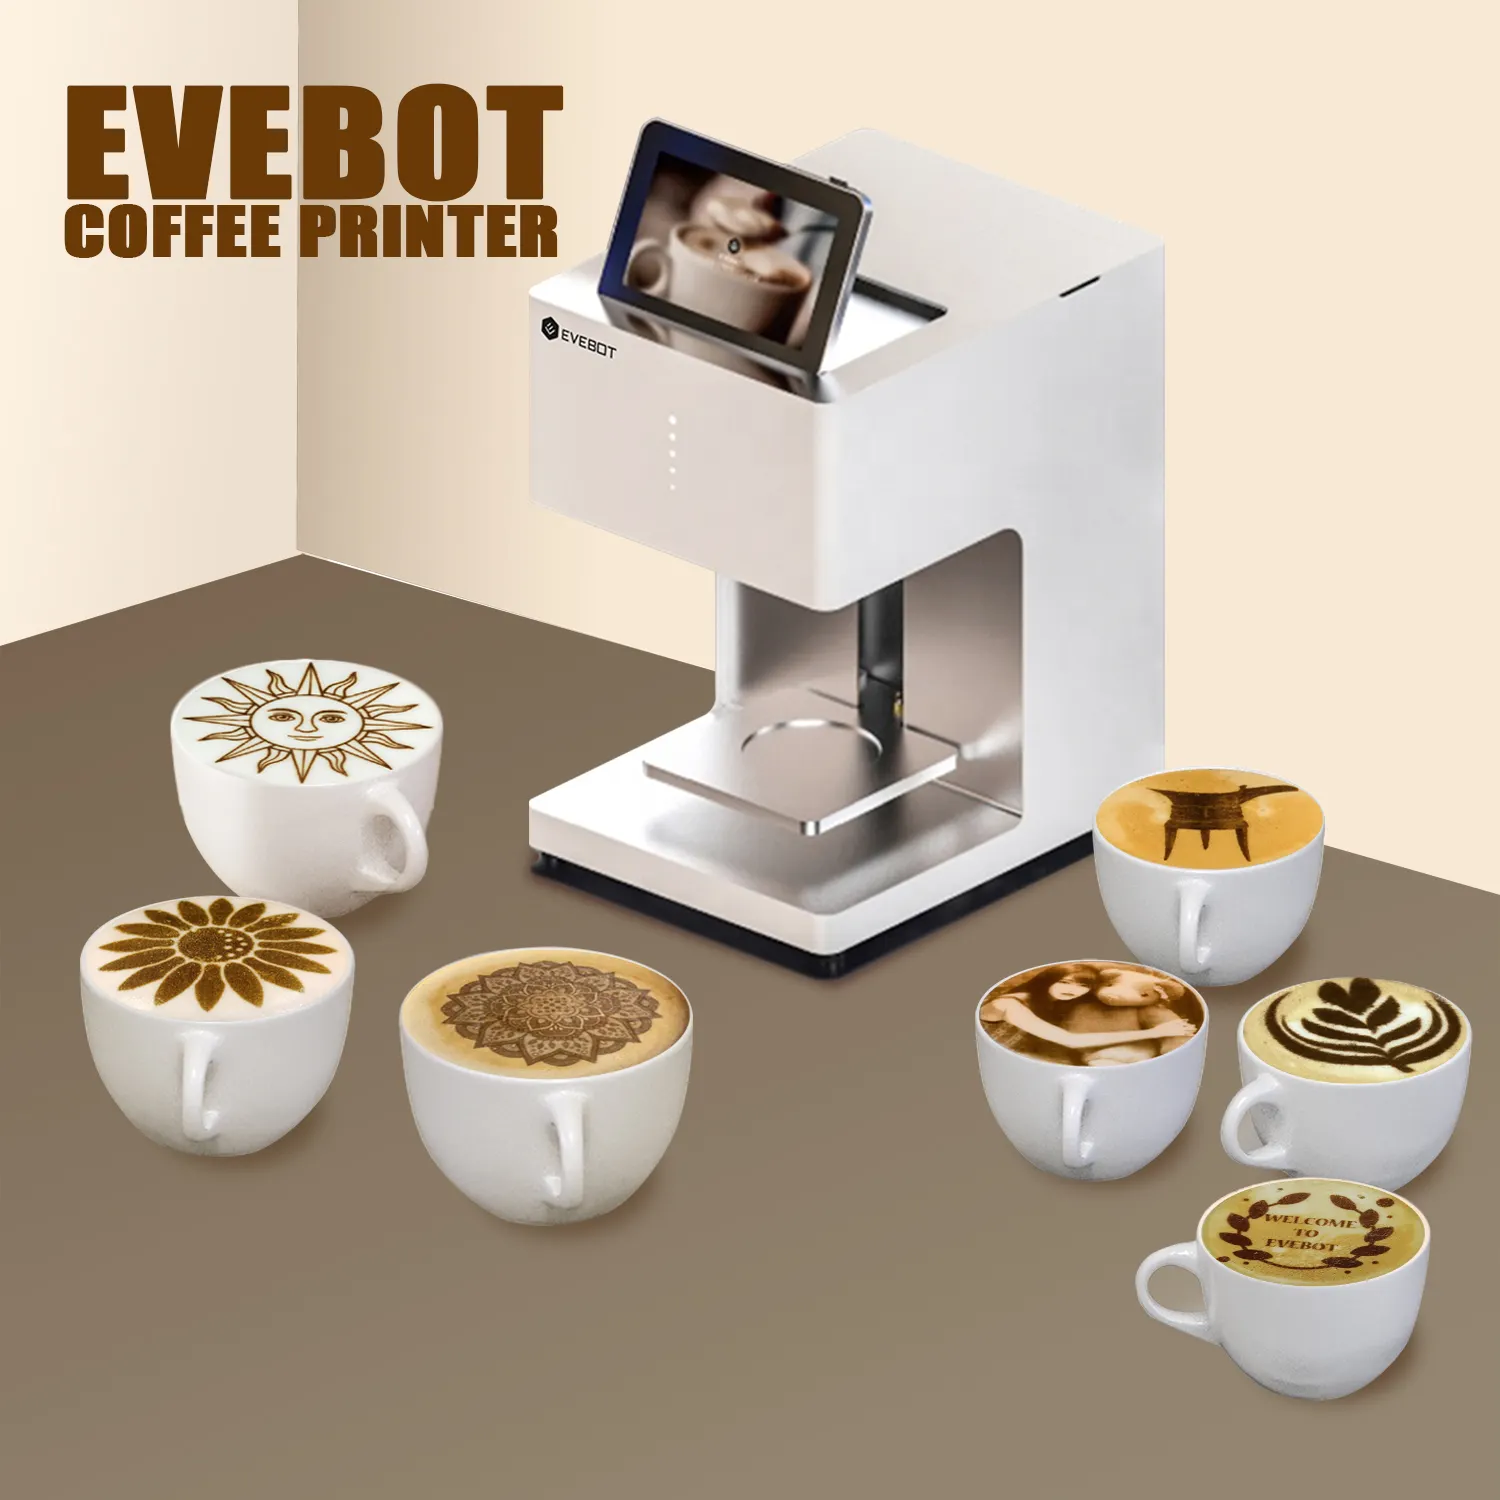 एवेबोट-प्रो कॉफी लट्टे कला मशीन रसोई रेस्तरां और होटल उपकरण होटल की आपूर्ति कैफे भोजन प्रिंटर कॉफी कला का उपयोग करते हैं